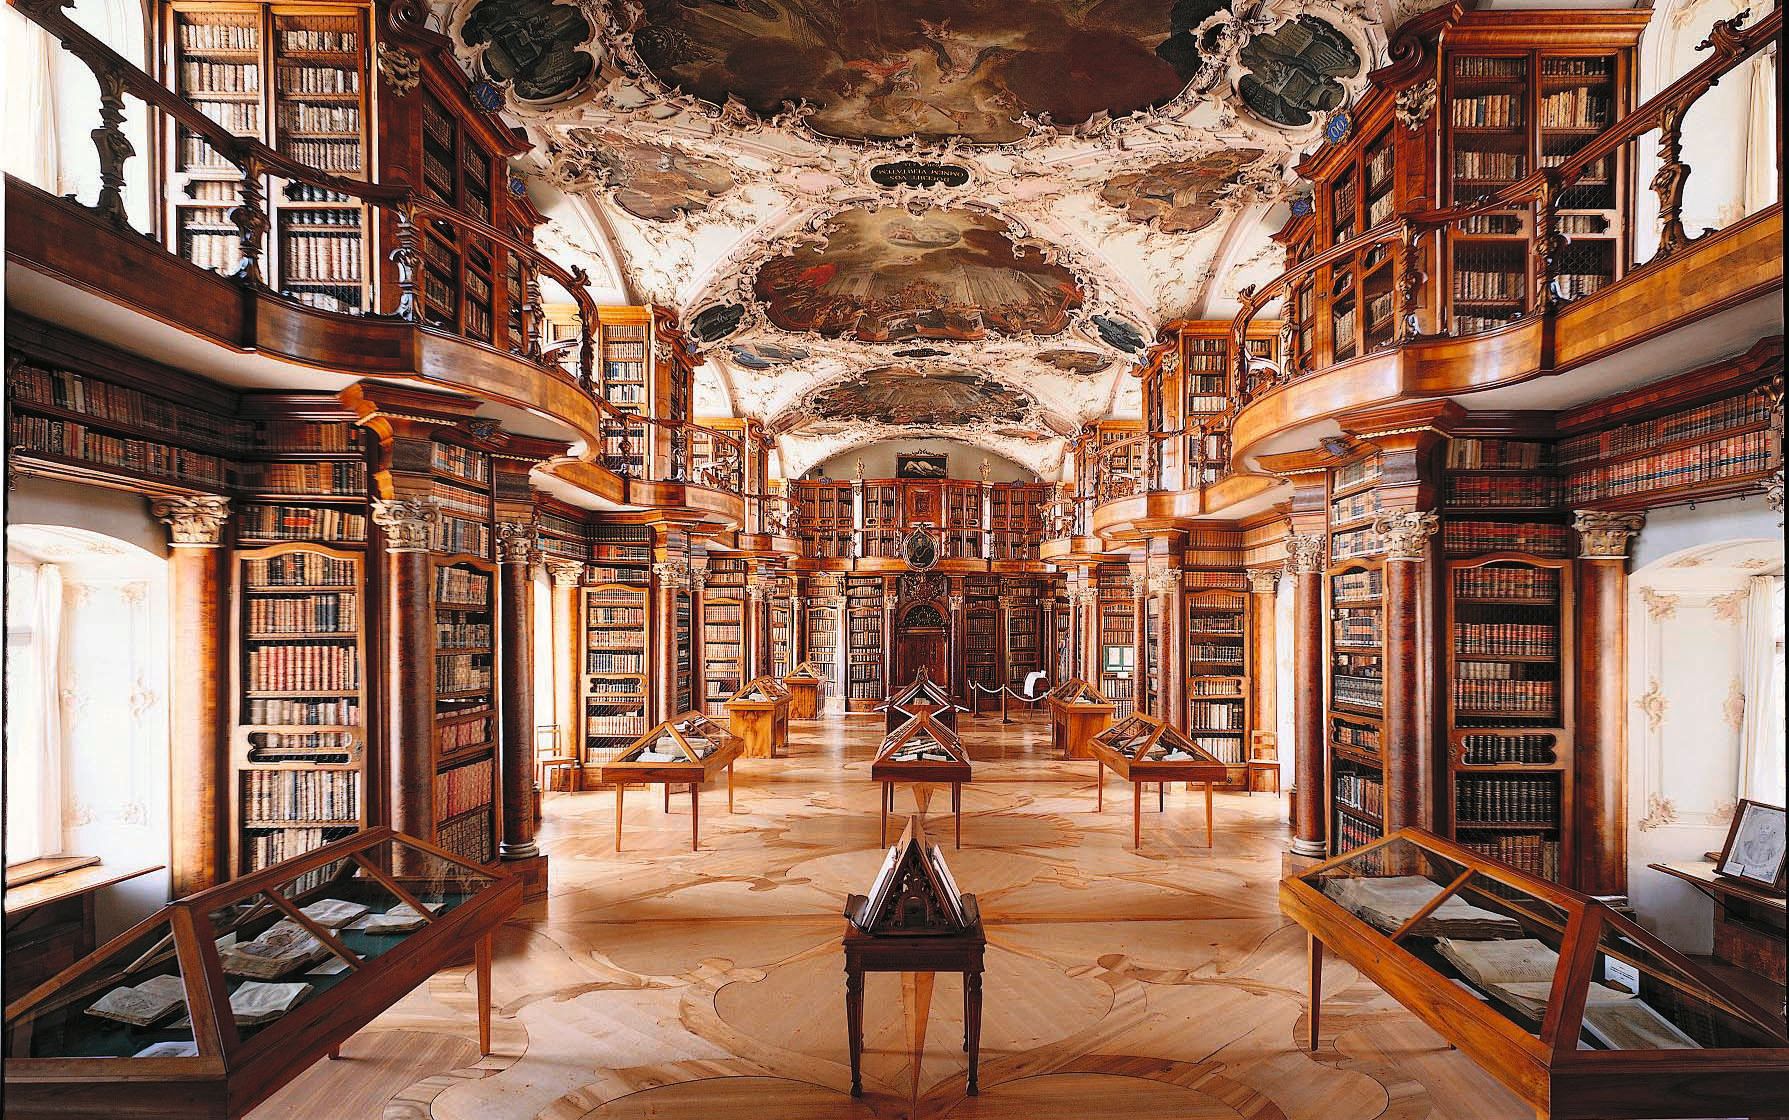 Biblioteca dell’abbazia di San Gallo, oggetto A dell’Inventario PBC, patrimonio mondiale dell'UNESCO e candidato alla protezione rafforzata